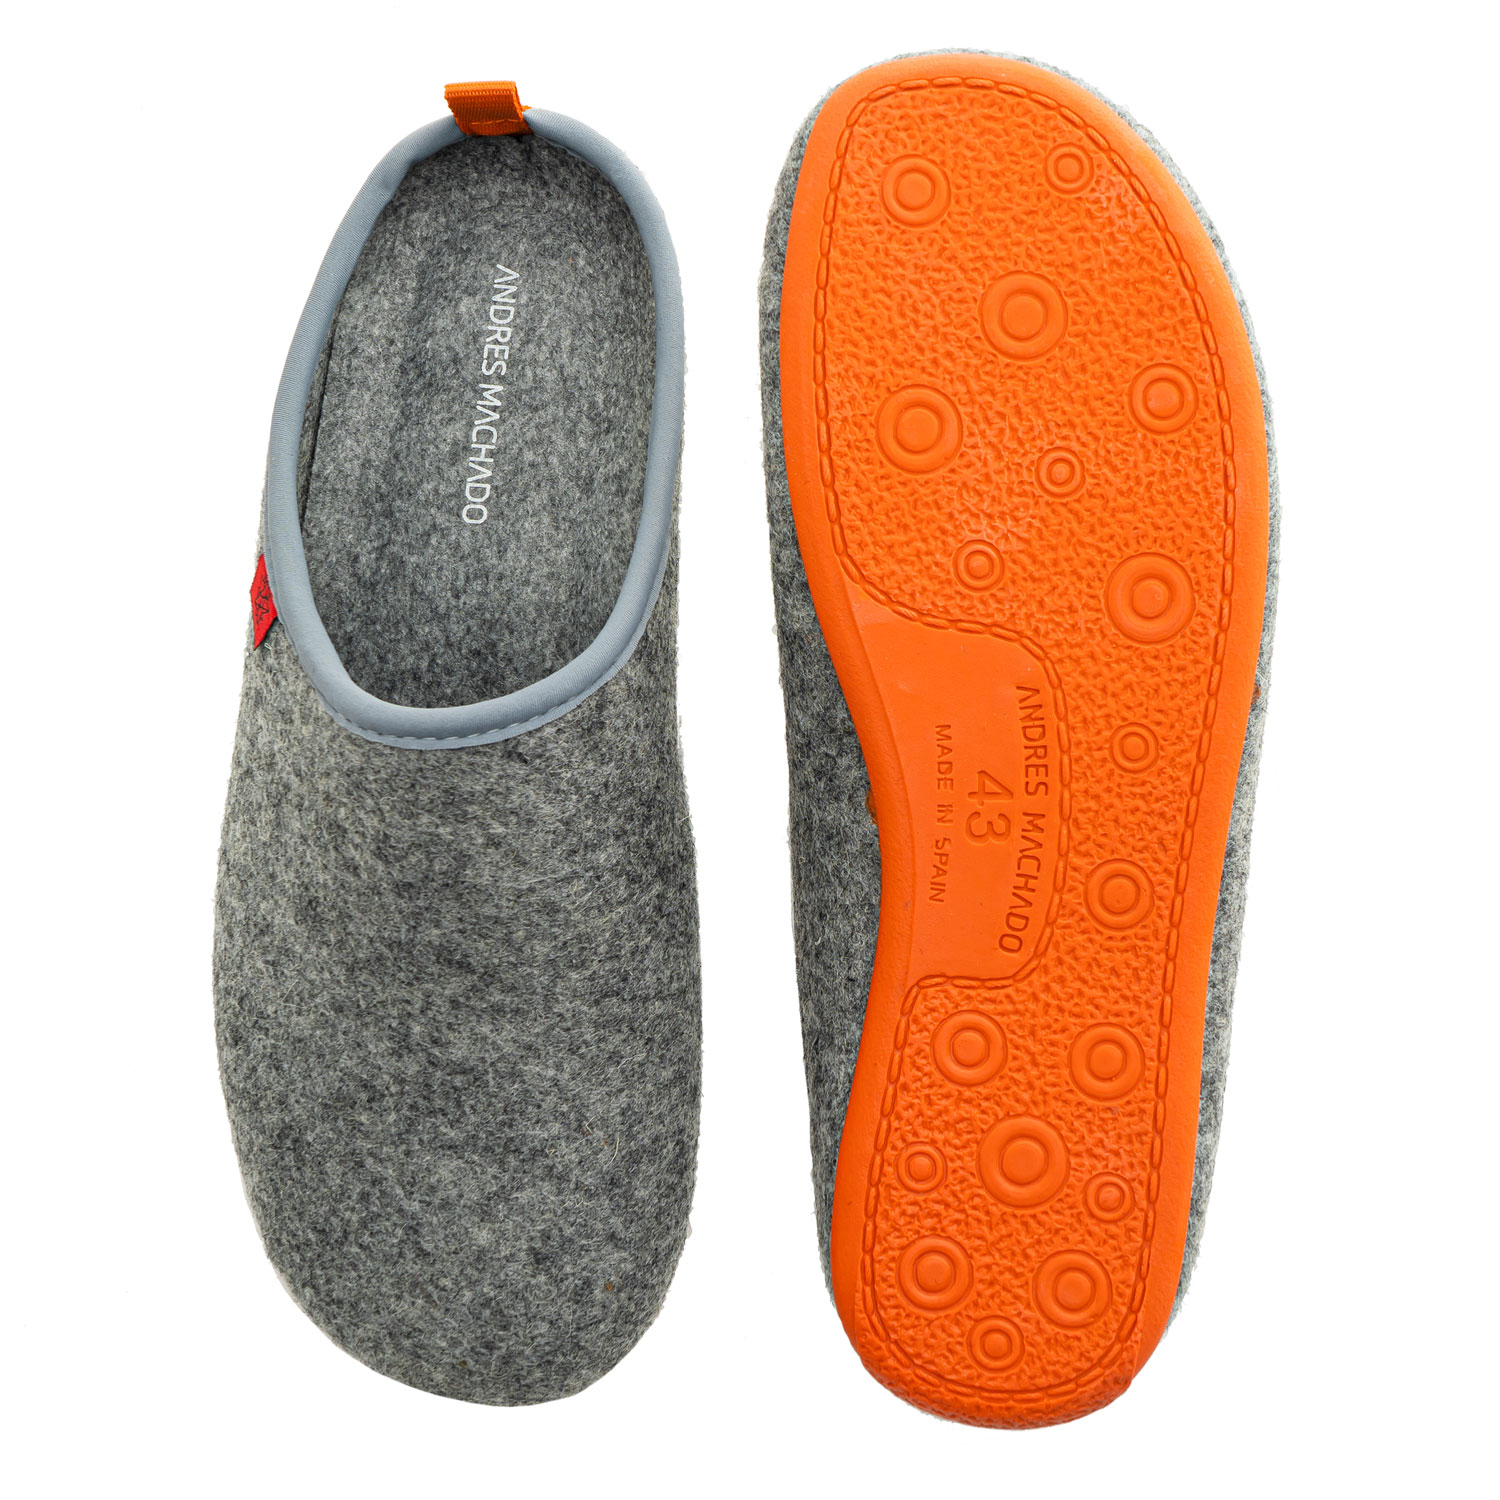 Unisex Grey Felt Slippers with Orange sole 